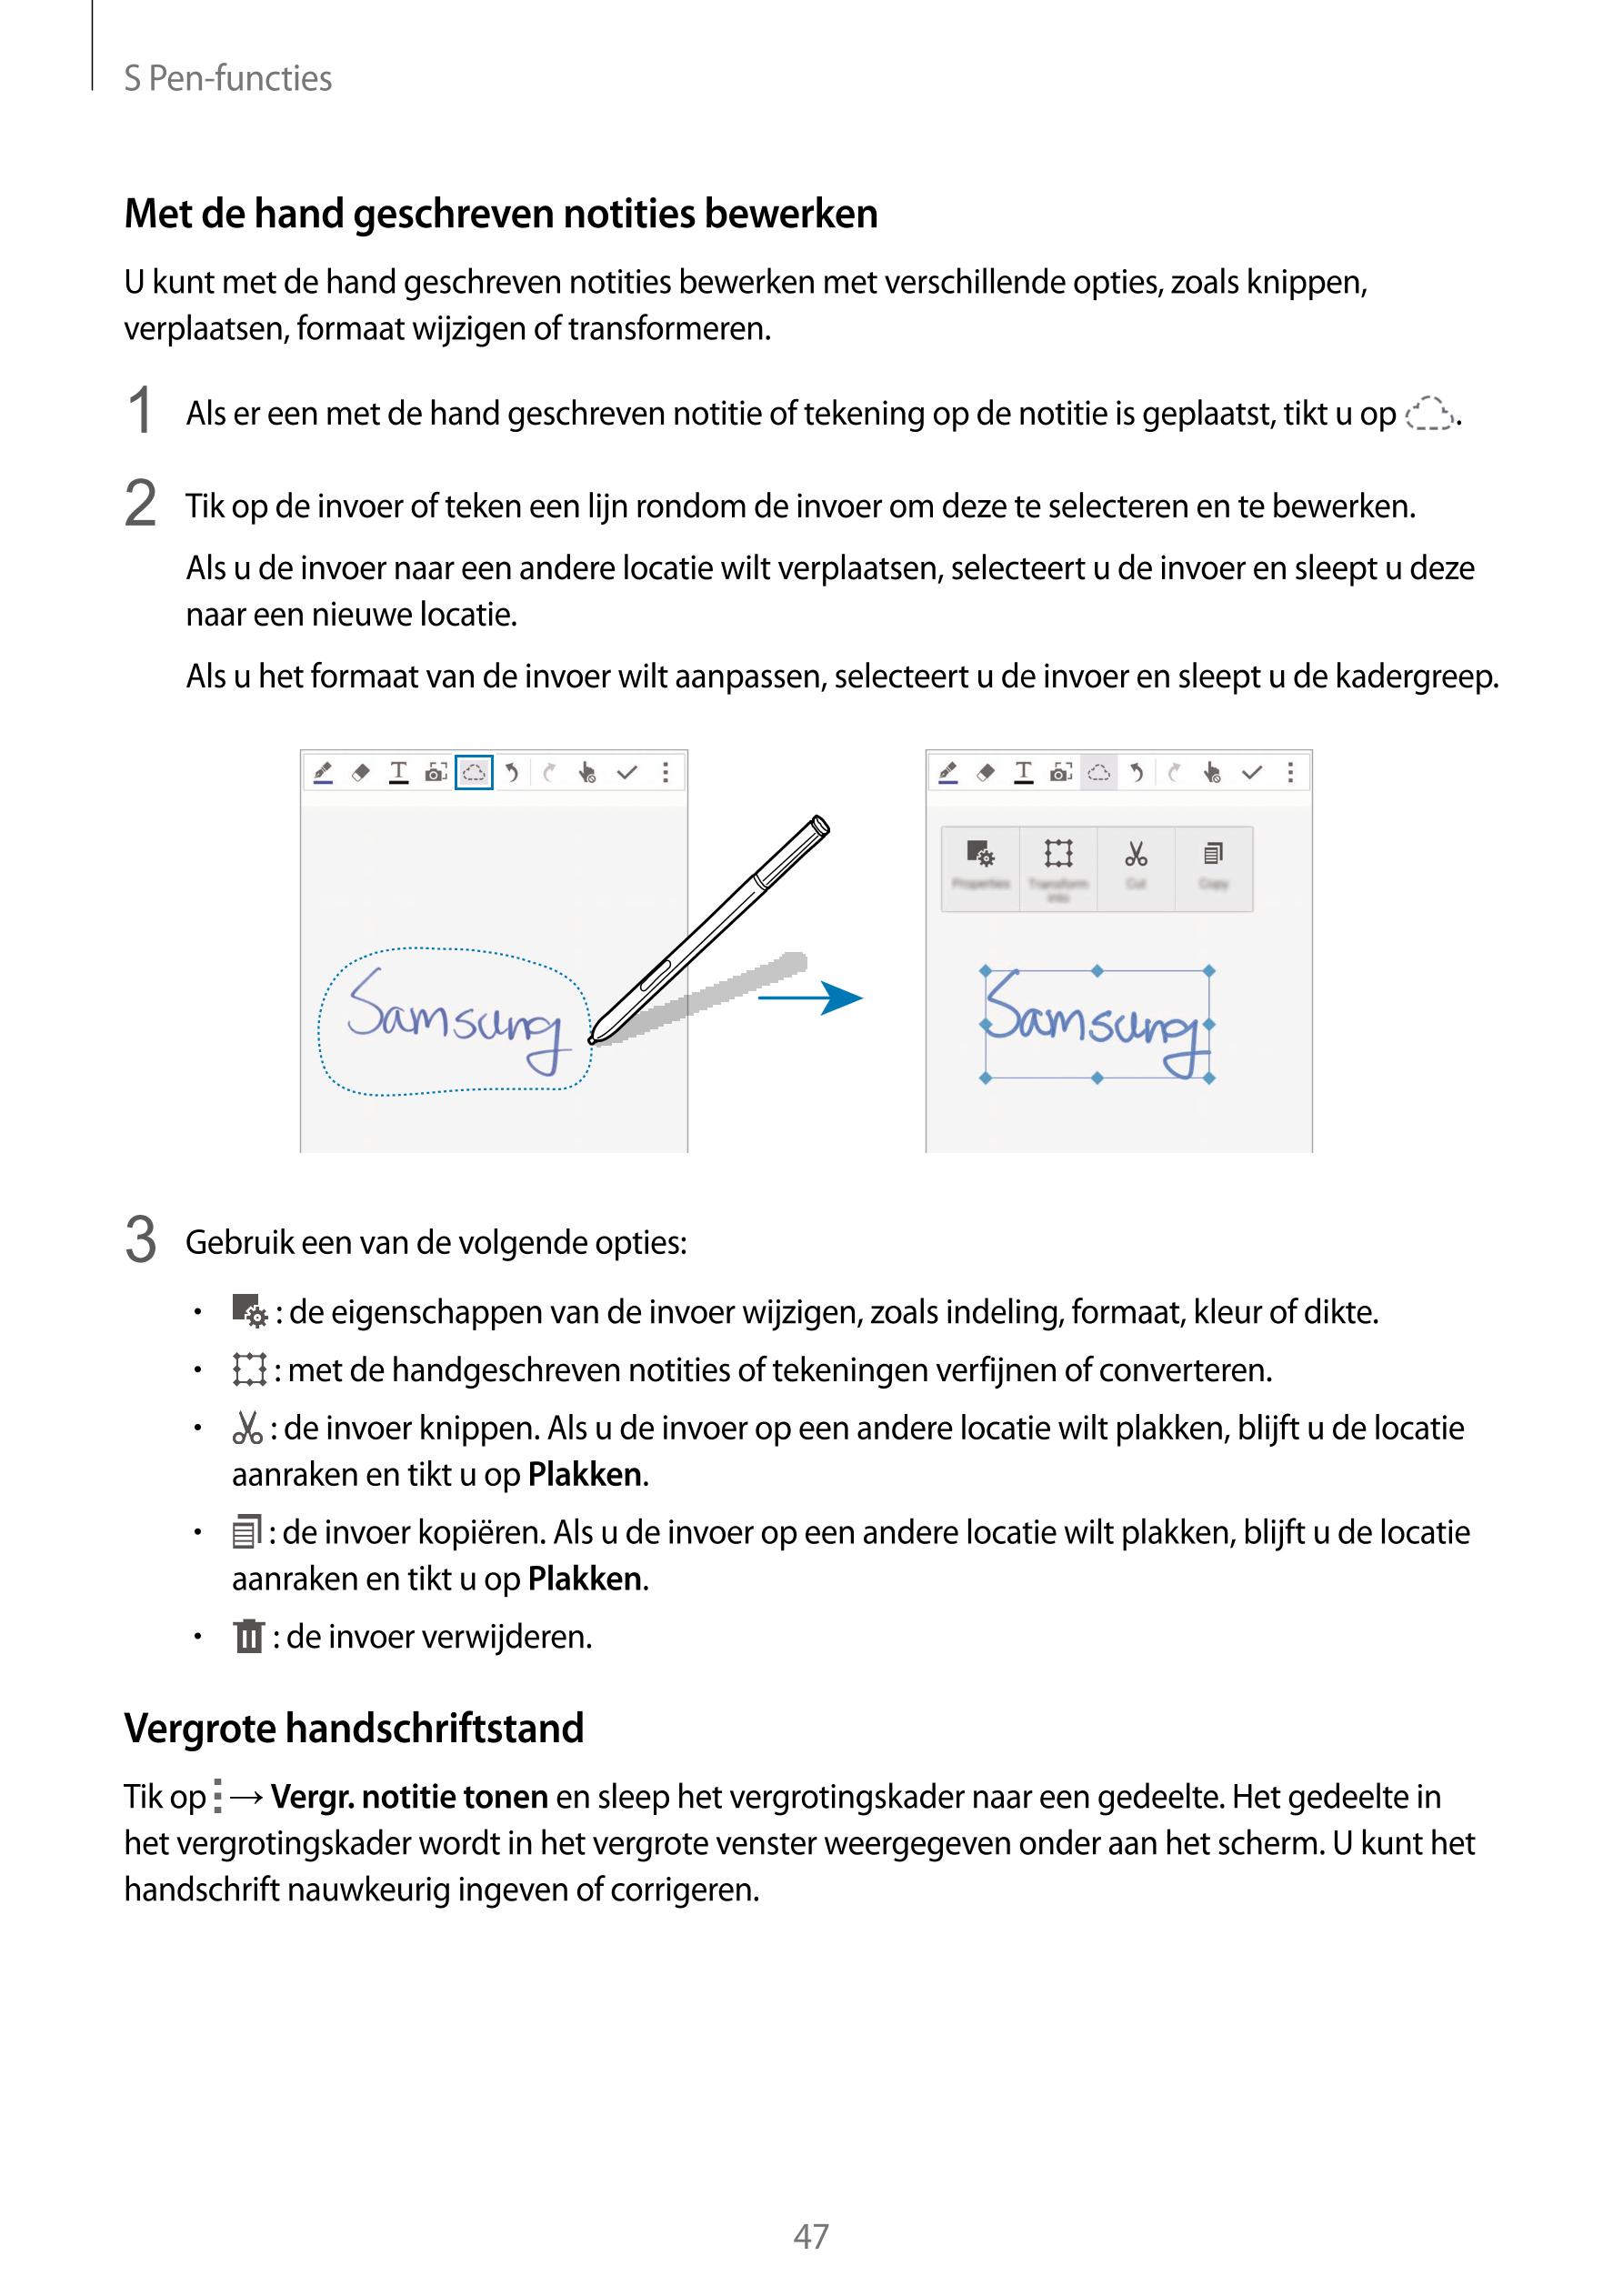 S Pen-functies
Met de hand geschreven notities bewerken
U kunt met de hand geschreven notities bewerken met verschillende opties